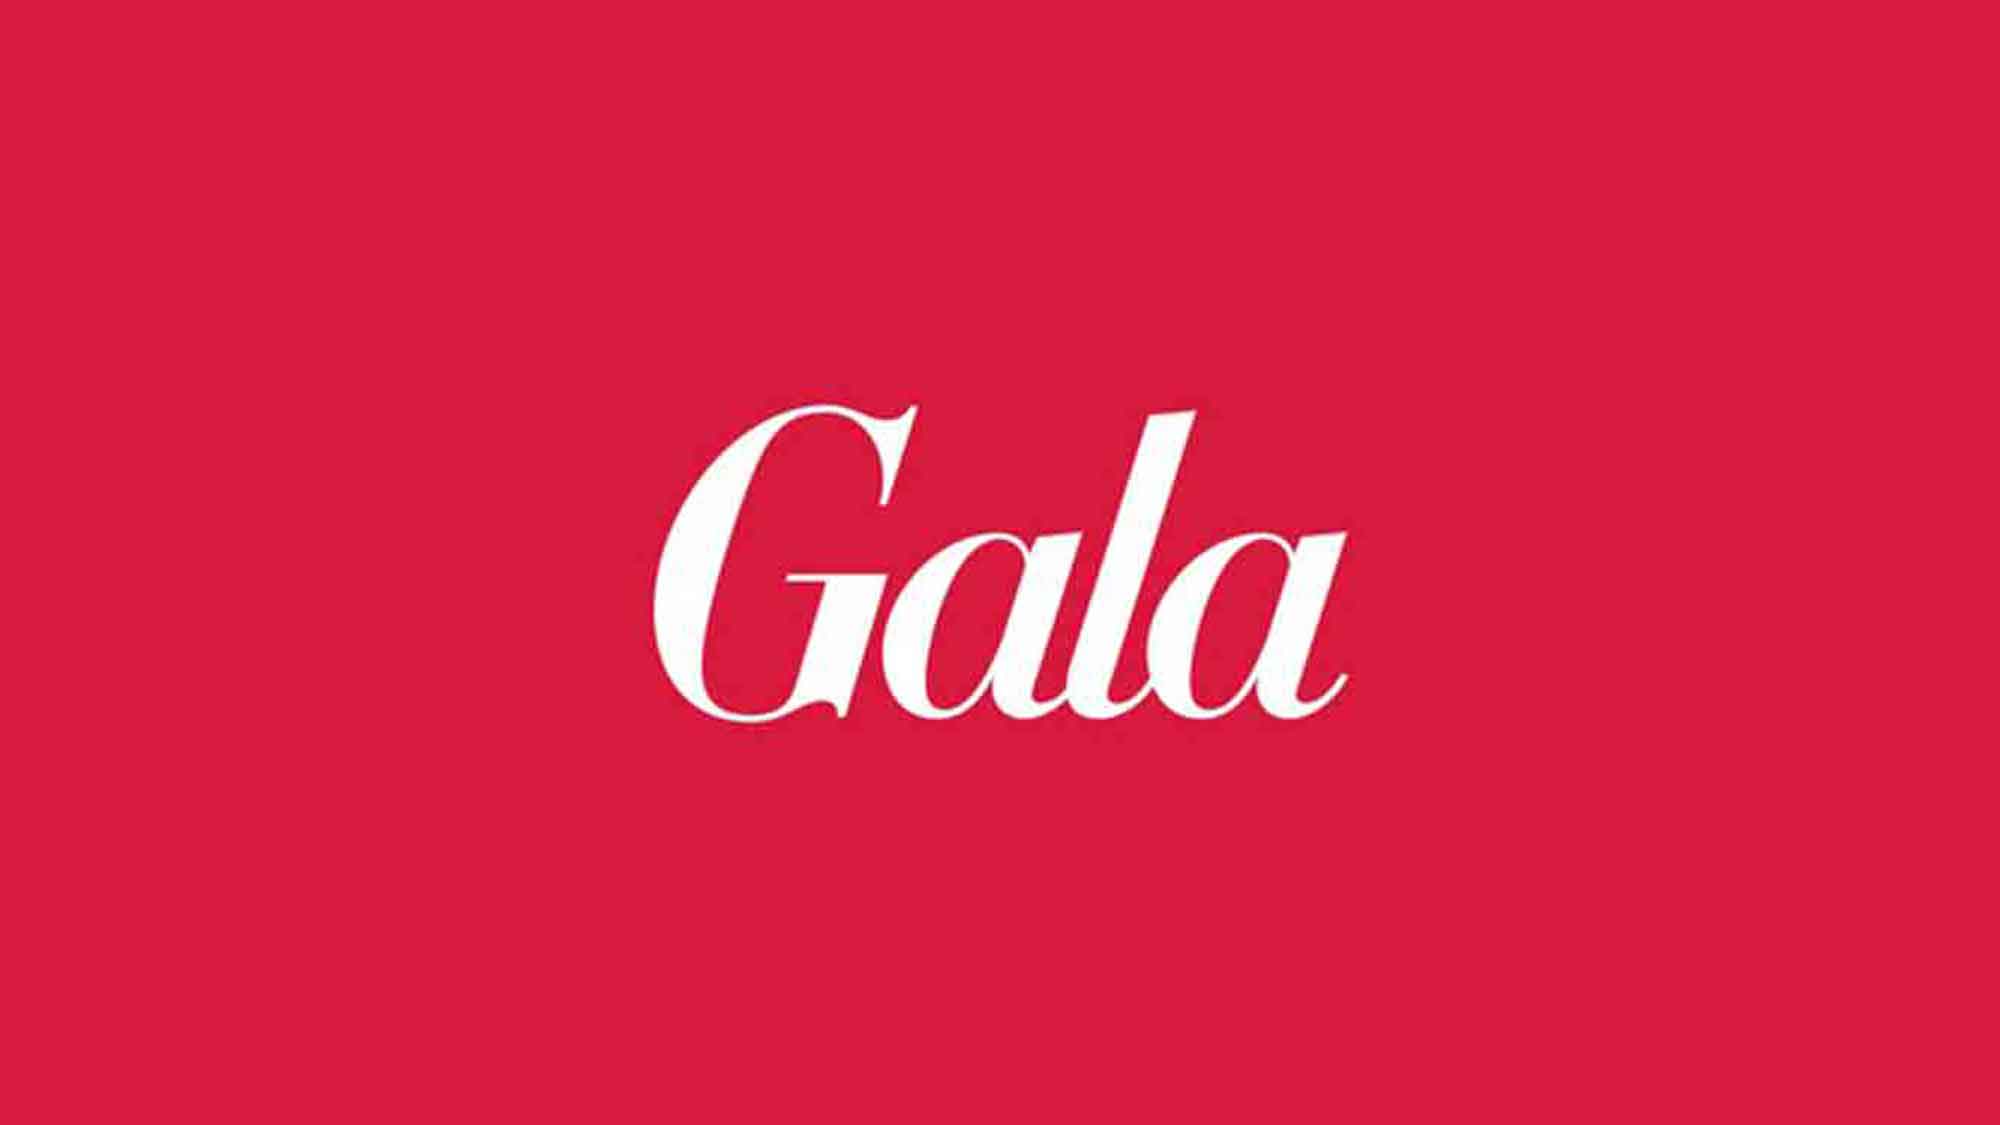 Gala: Lena Gercke – an Weihnachten überwindet sie ihre Höhenangst